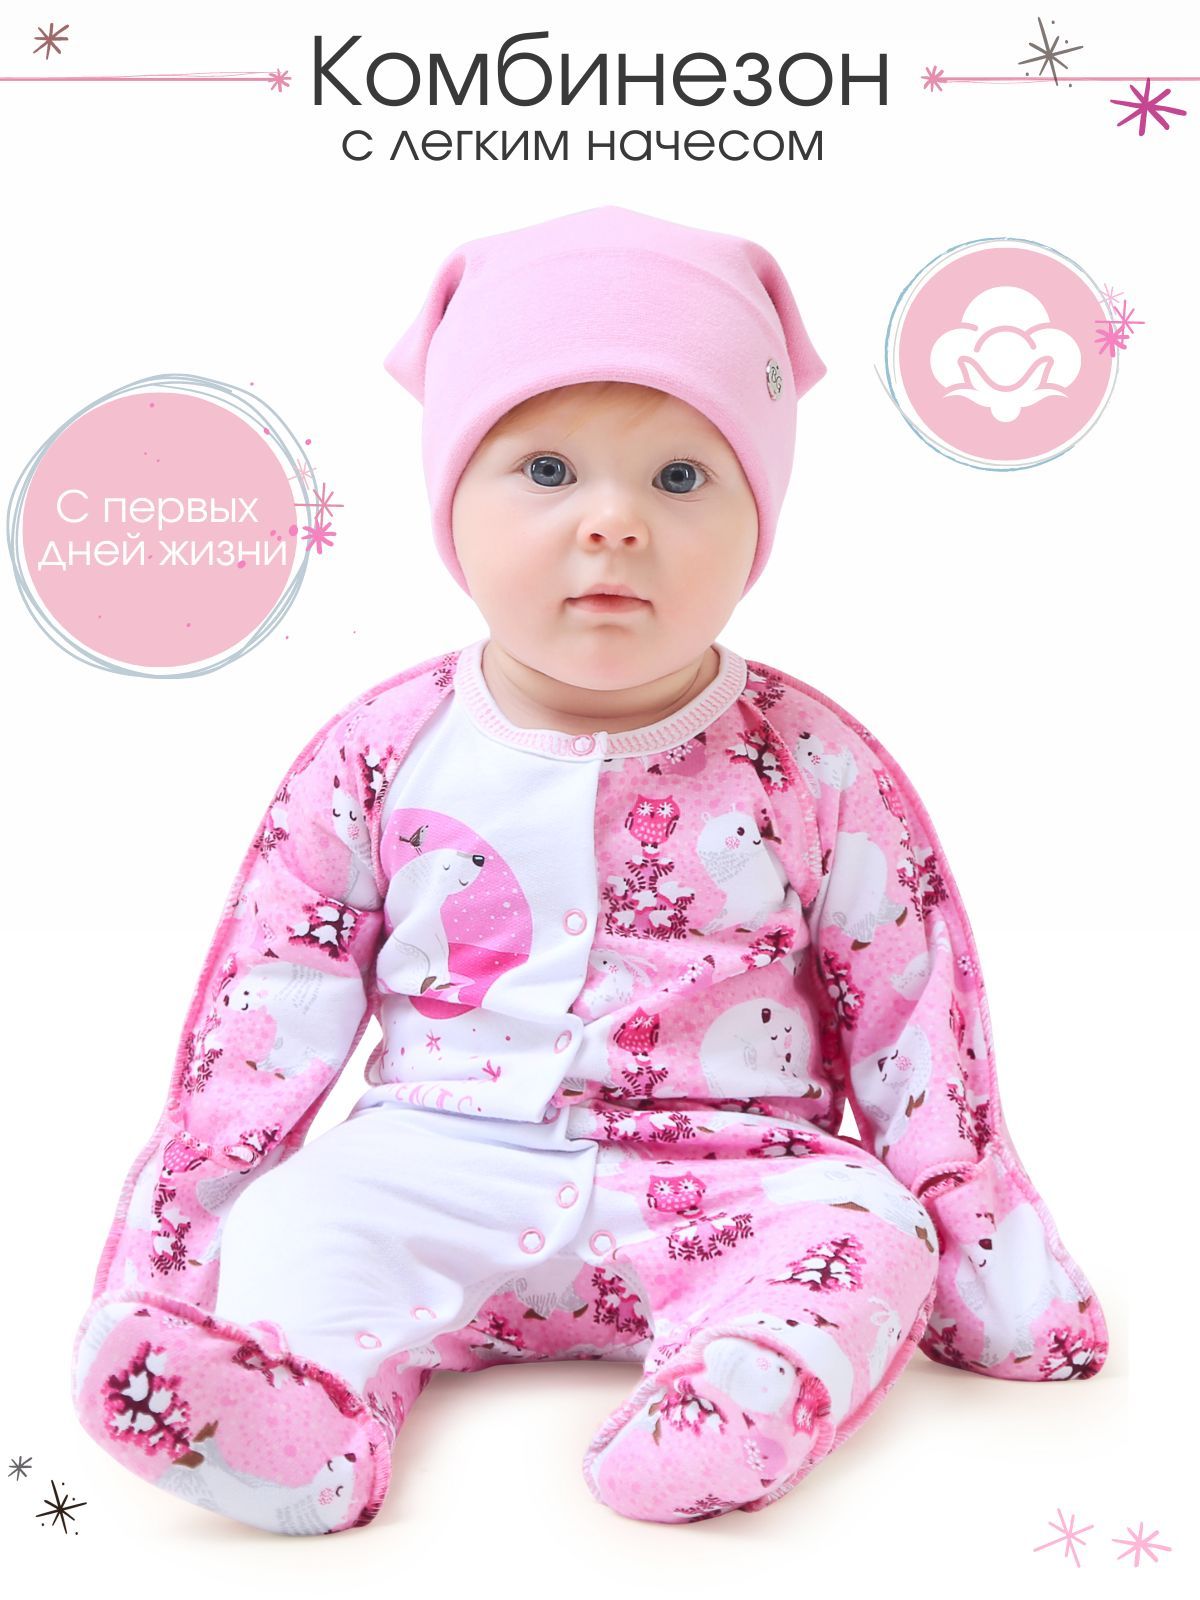 Комбинезон детский Babyglory MT002 Медвежата, светло-розовый, 56